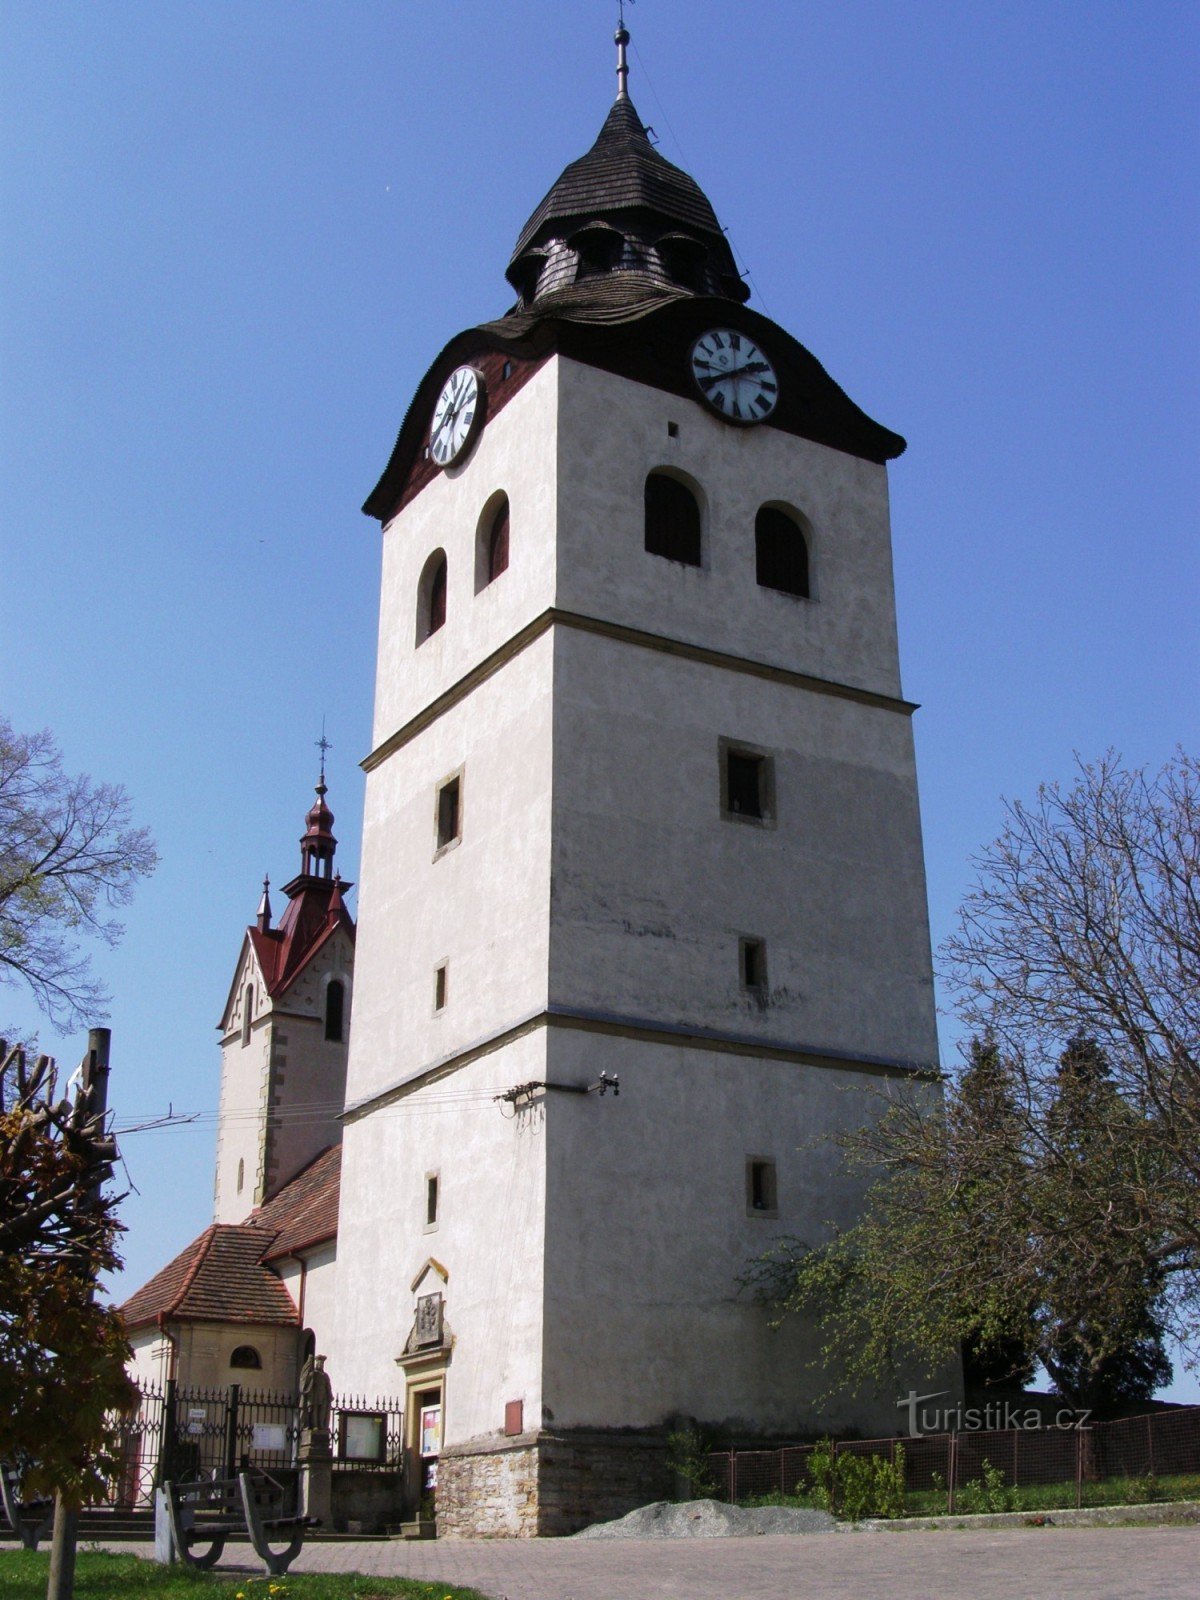 Богуславице - церковь св. Николай с колокольчиком